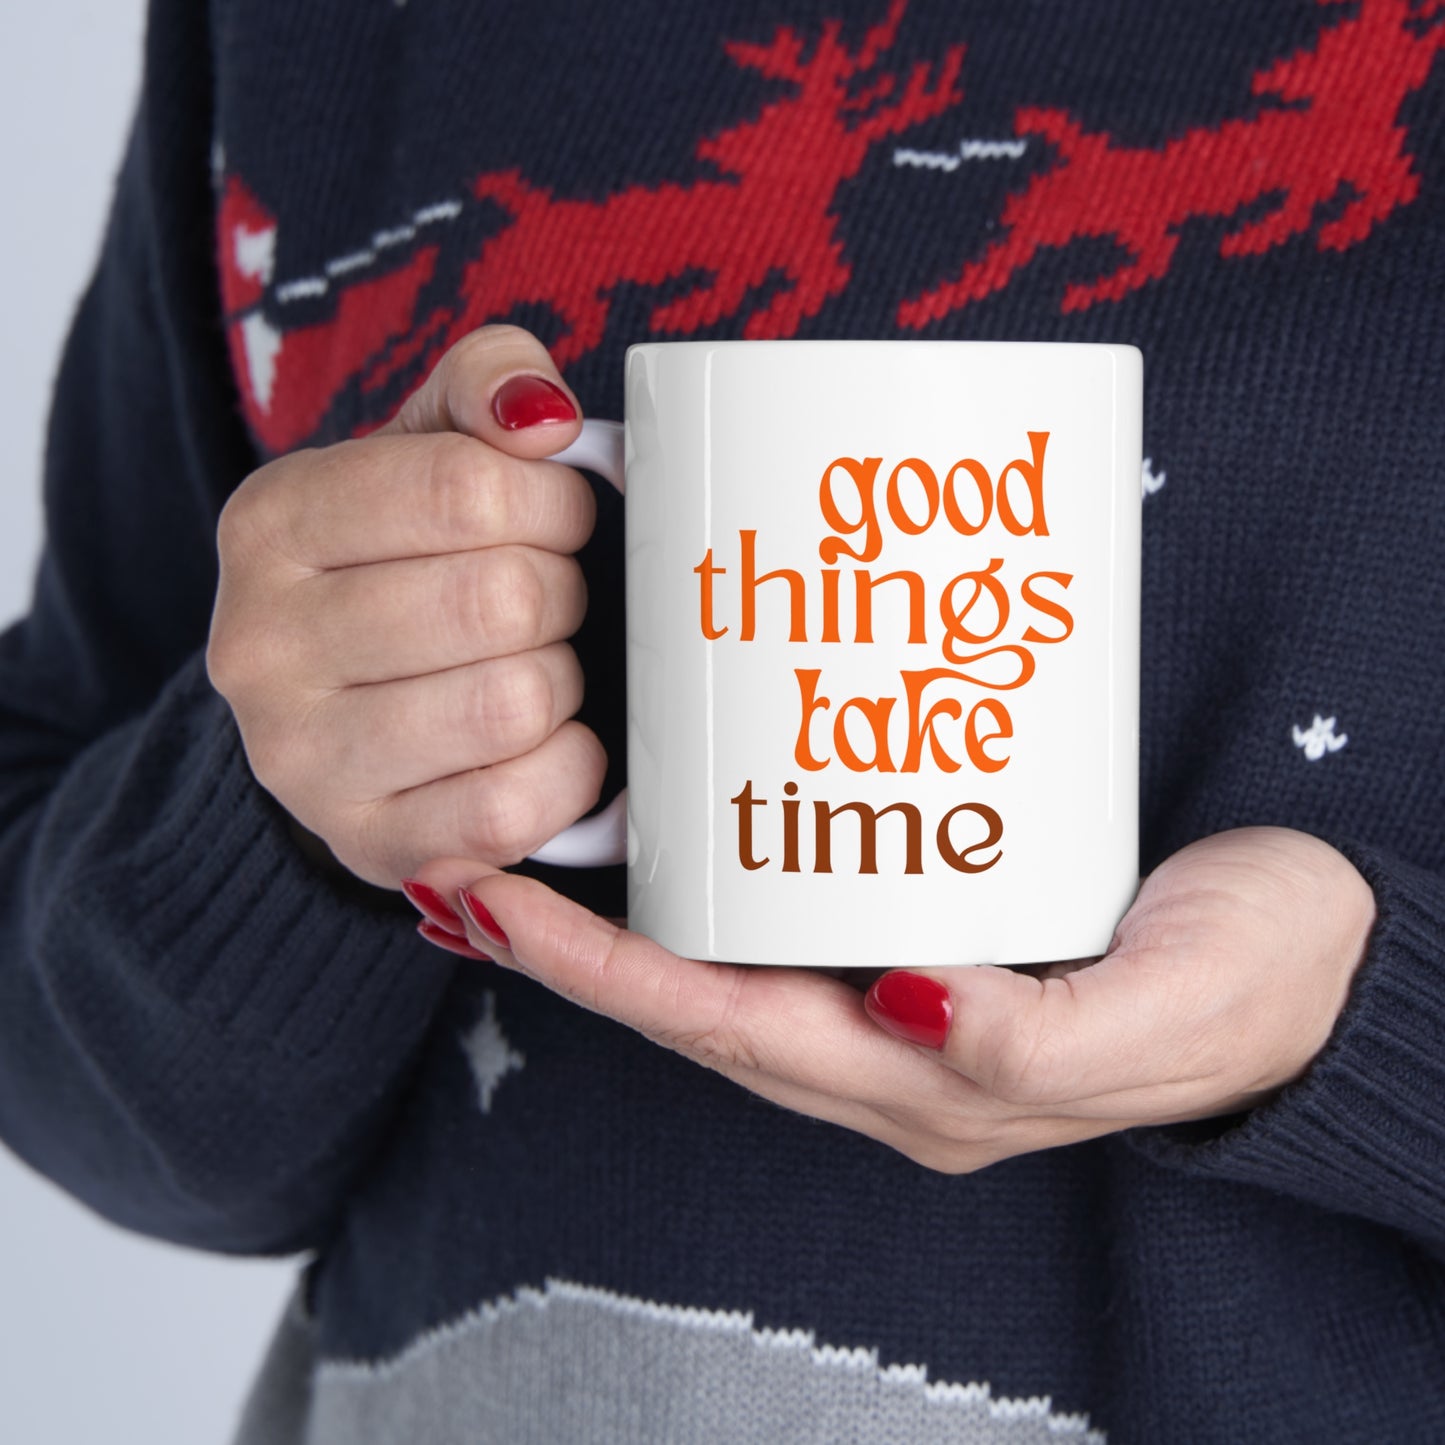 Good things take time Ceramic Mug 11oz